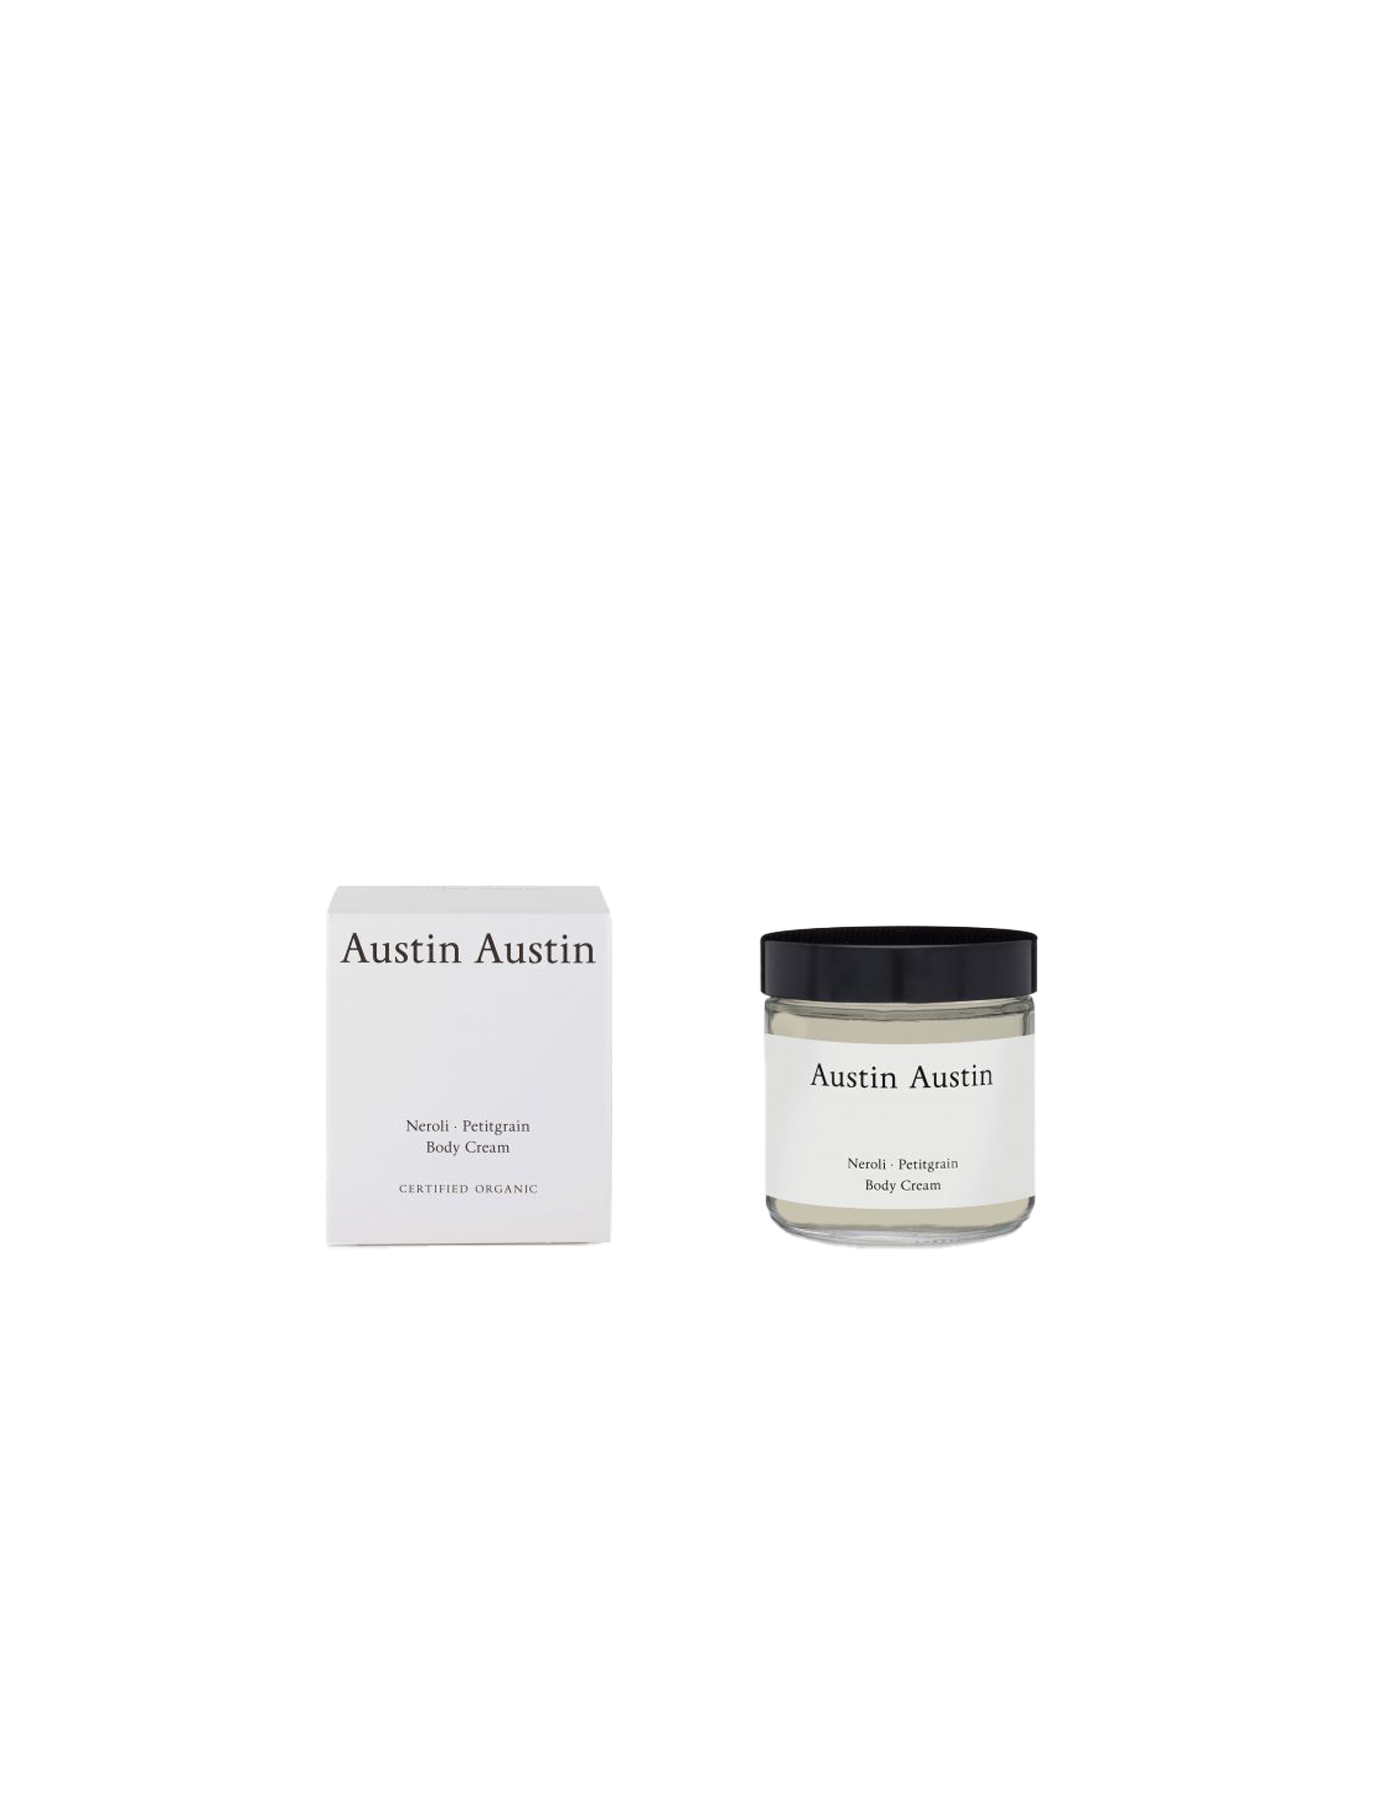 Austin Austin Neroli & Petitgrain Body Cream, Austin Austin